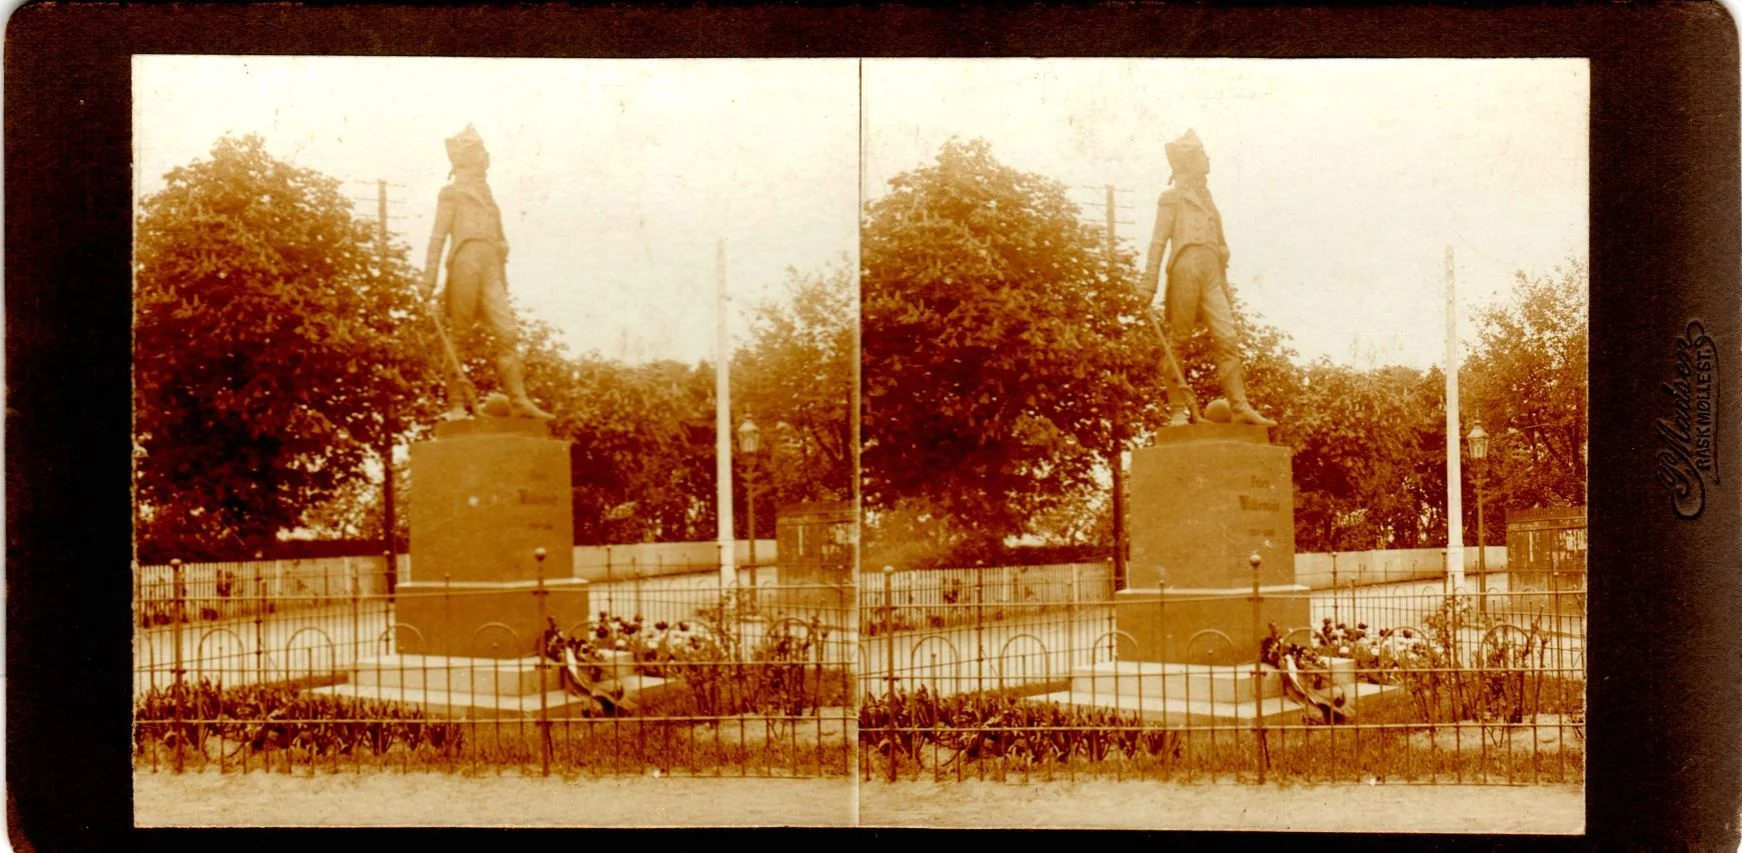 11432.14  Willemoes monument, Assens 5610  Billede optaget cirka 1914  Fotograf Peter Møller, Rask Mølle